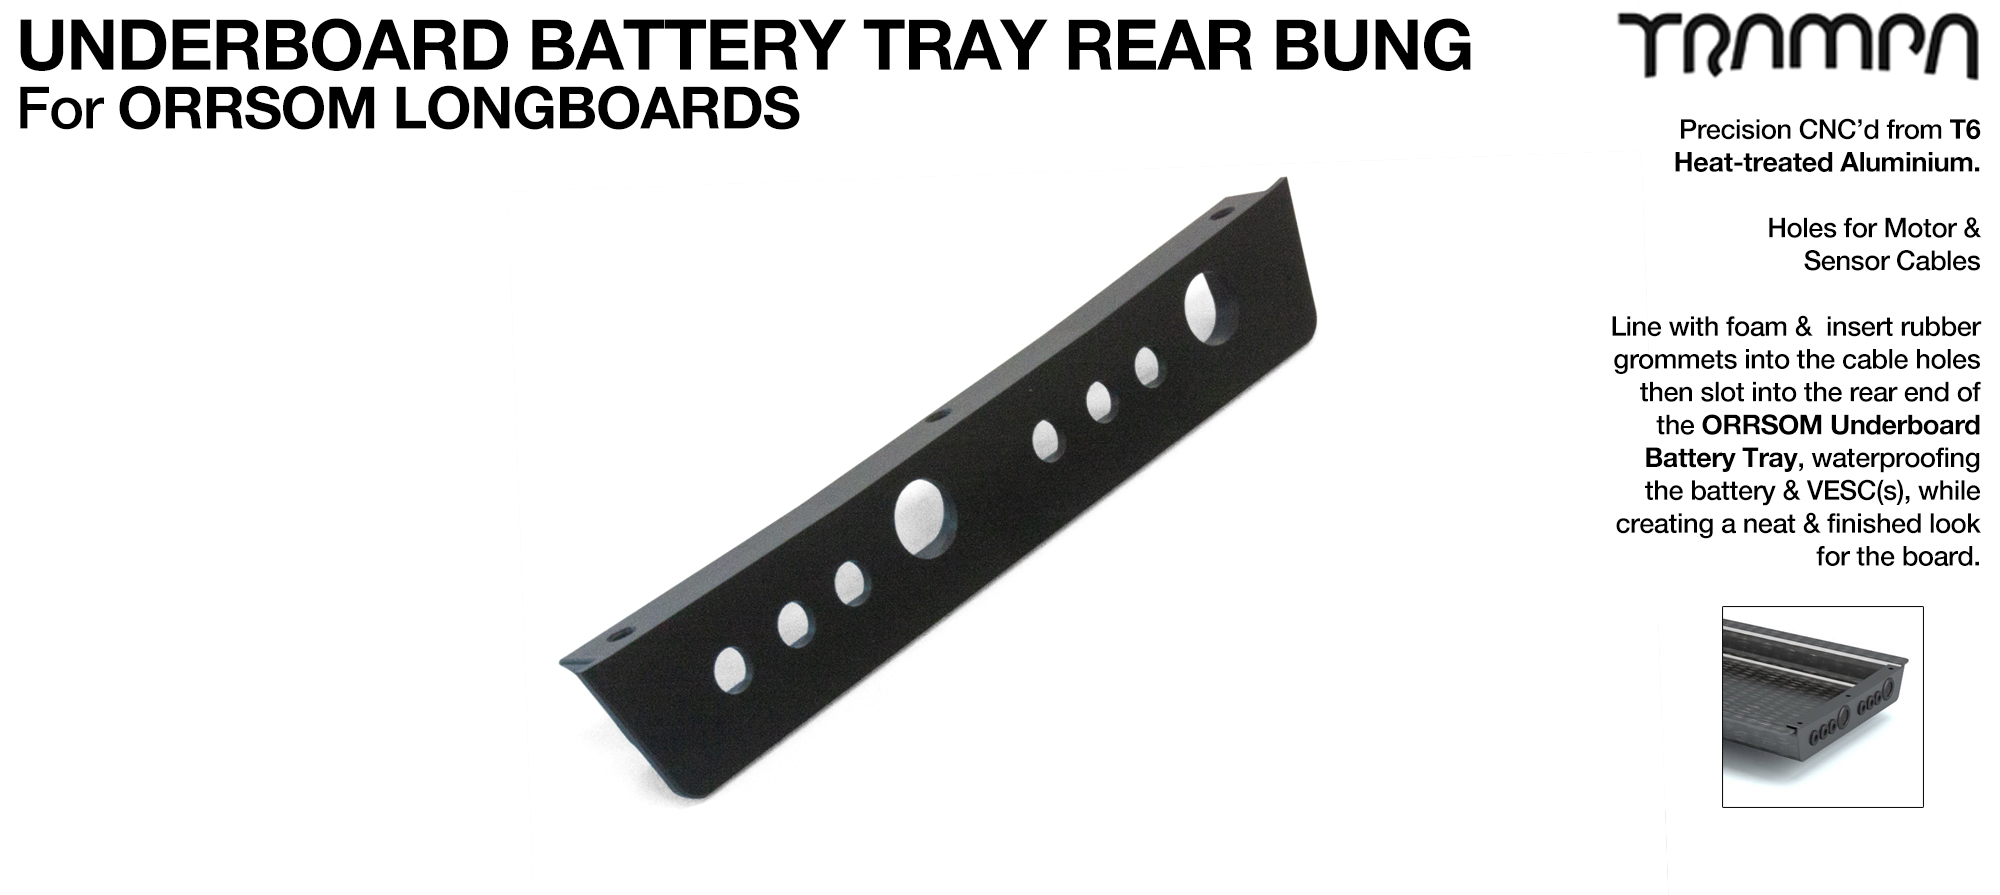 ORRSOM Longboard Underboard Battery Tray Rear end T6 Bung